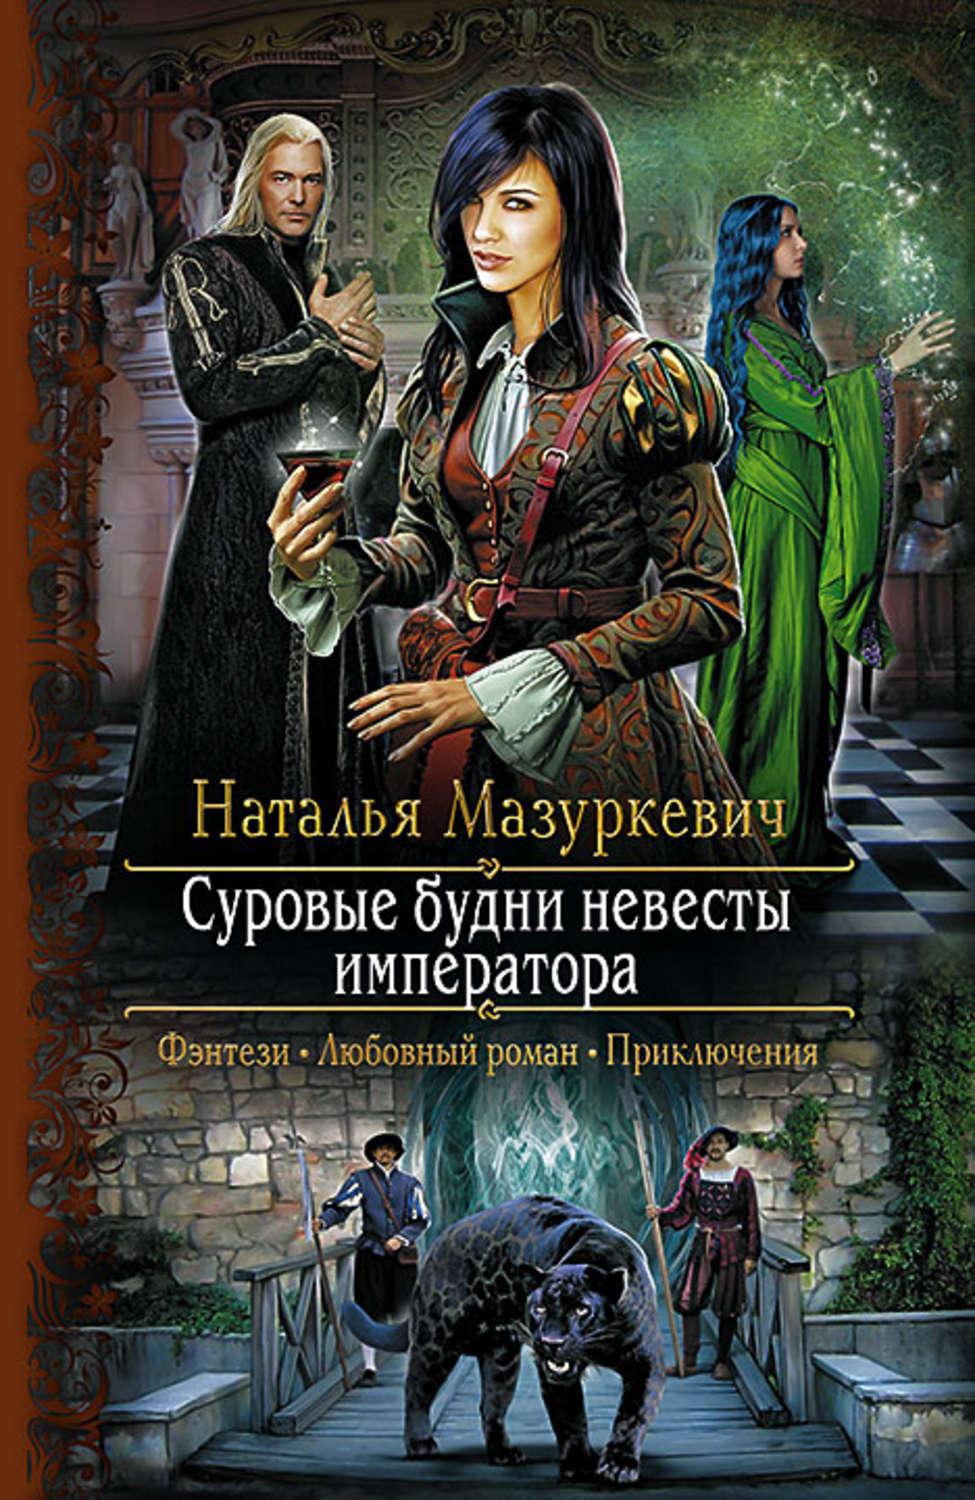 Наталья мазуркевич все книги скачать бесплатно fb2